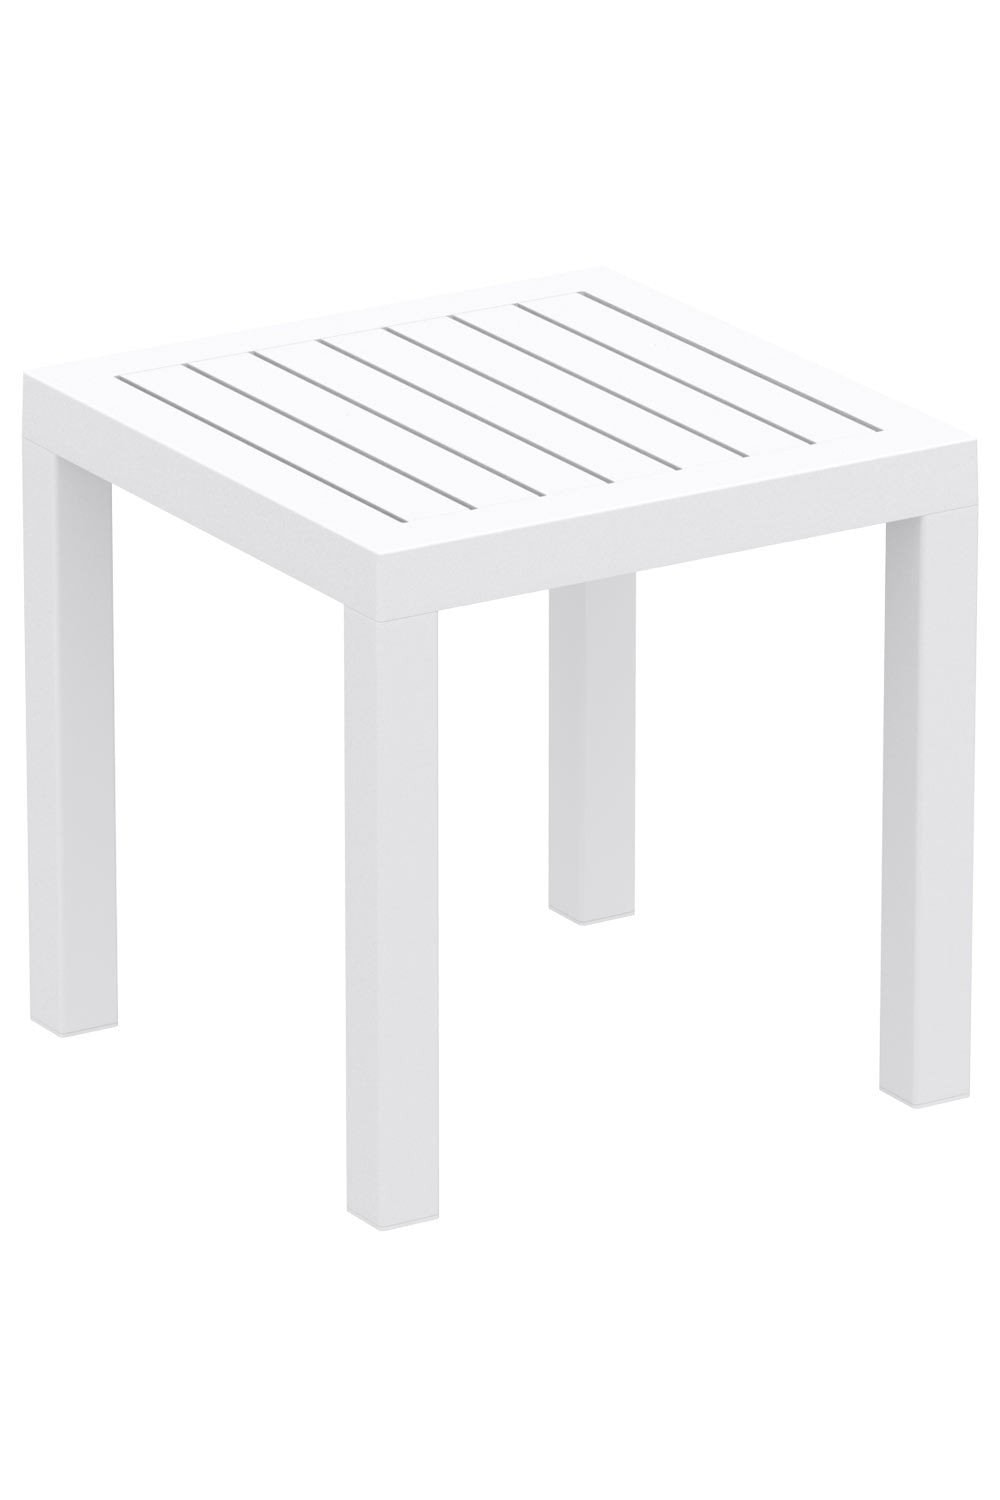 Petite table de jardin en plastique blanc résistante aux